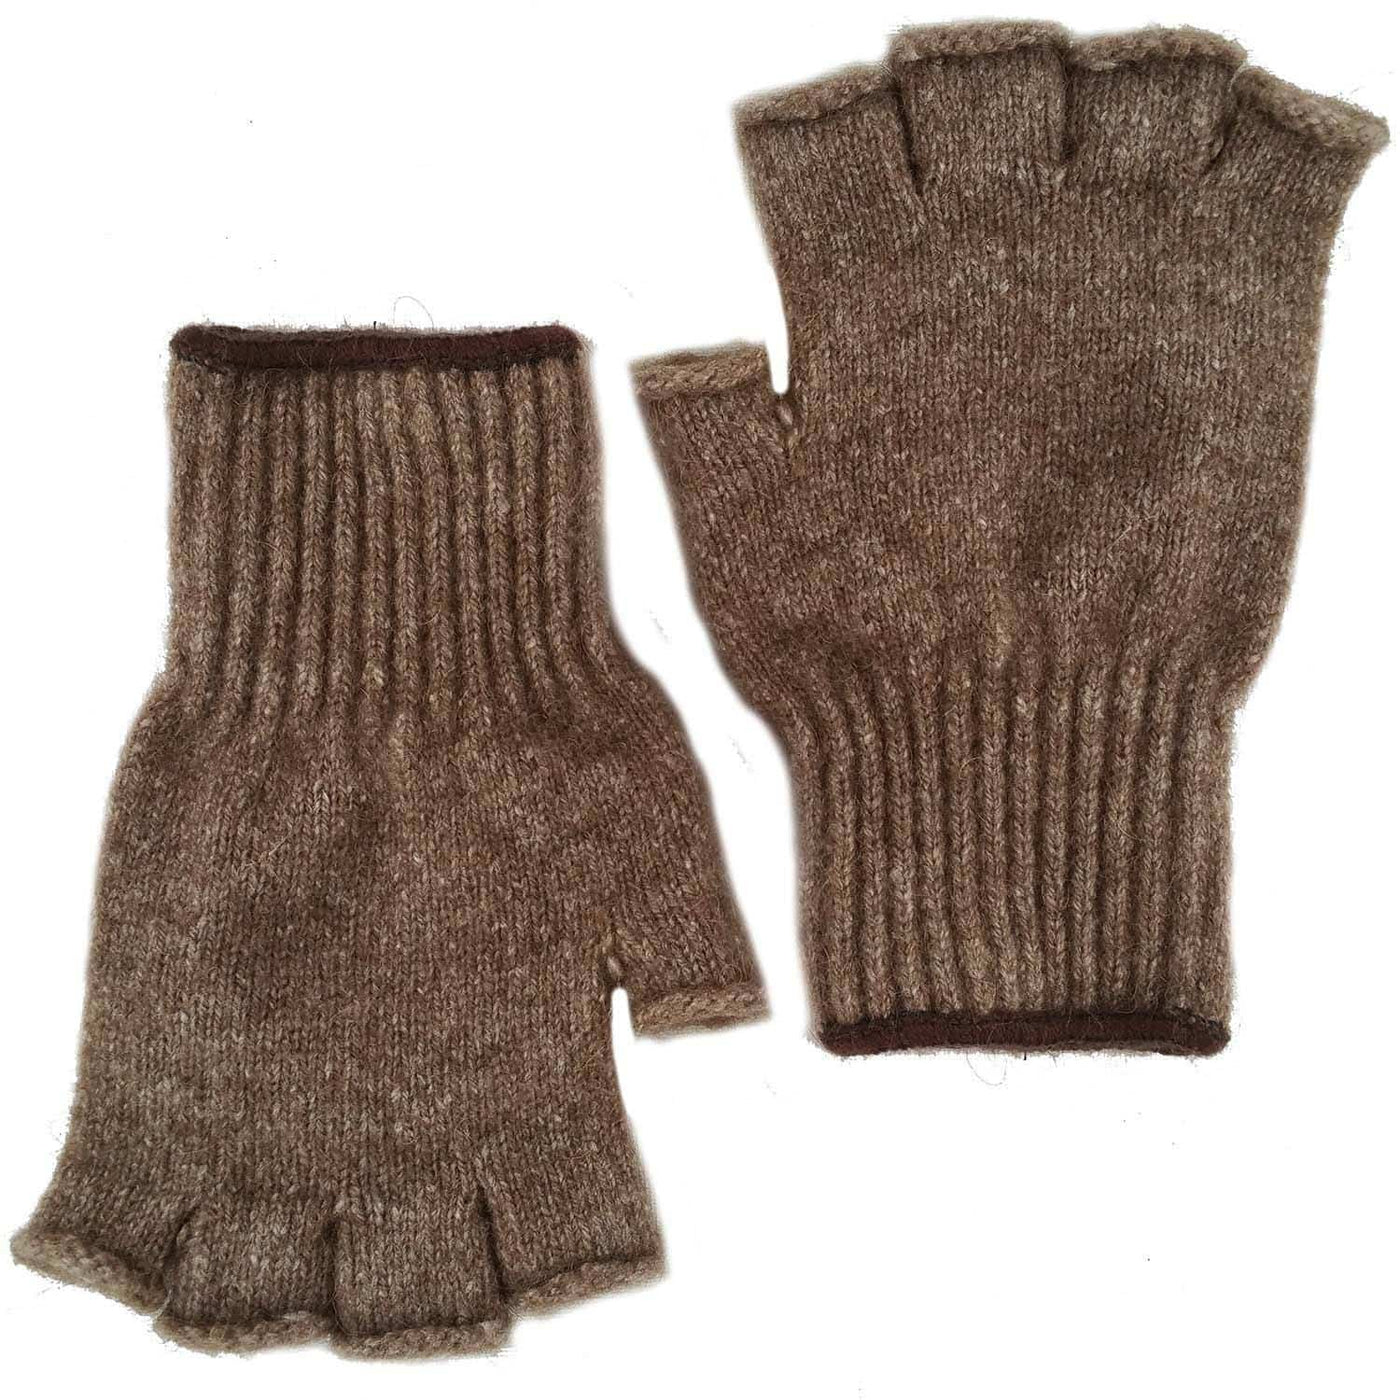 Advantage Gear - Bison/Merino Fingerless Gloves Bison Gear The Buffalo Wool Co. 